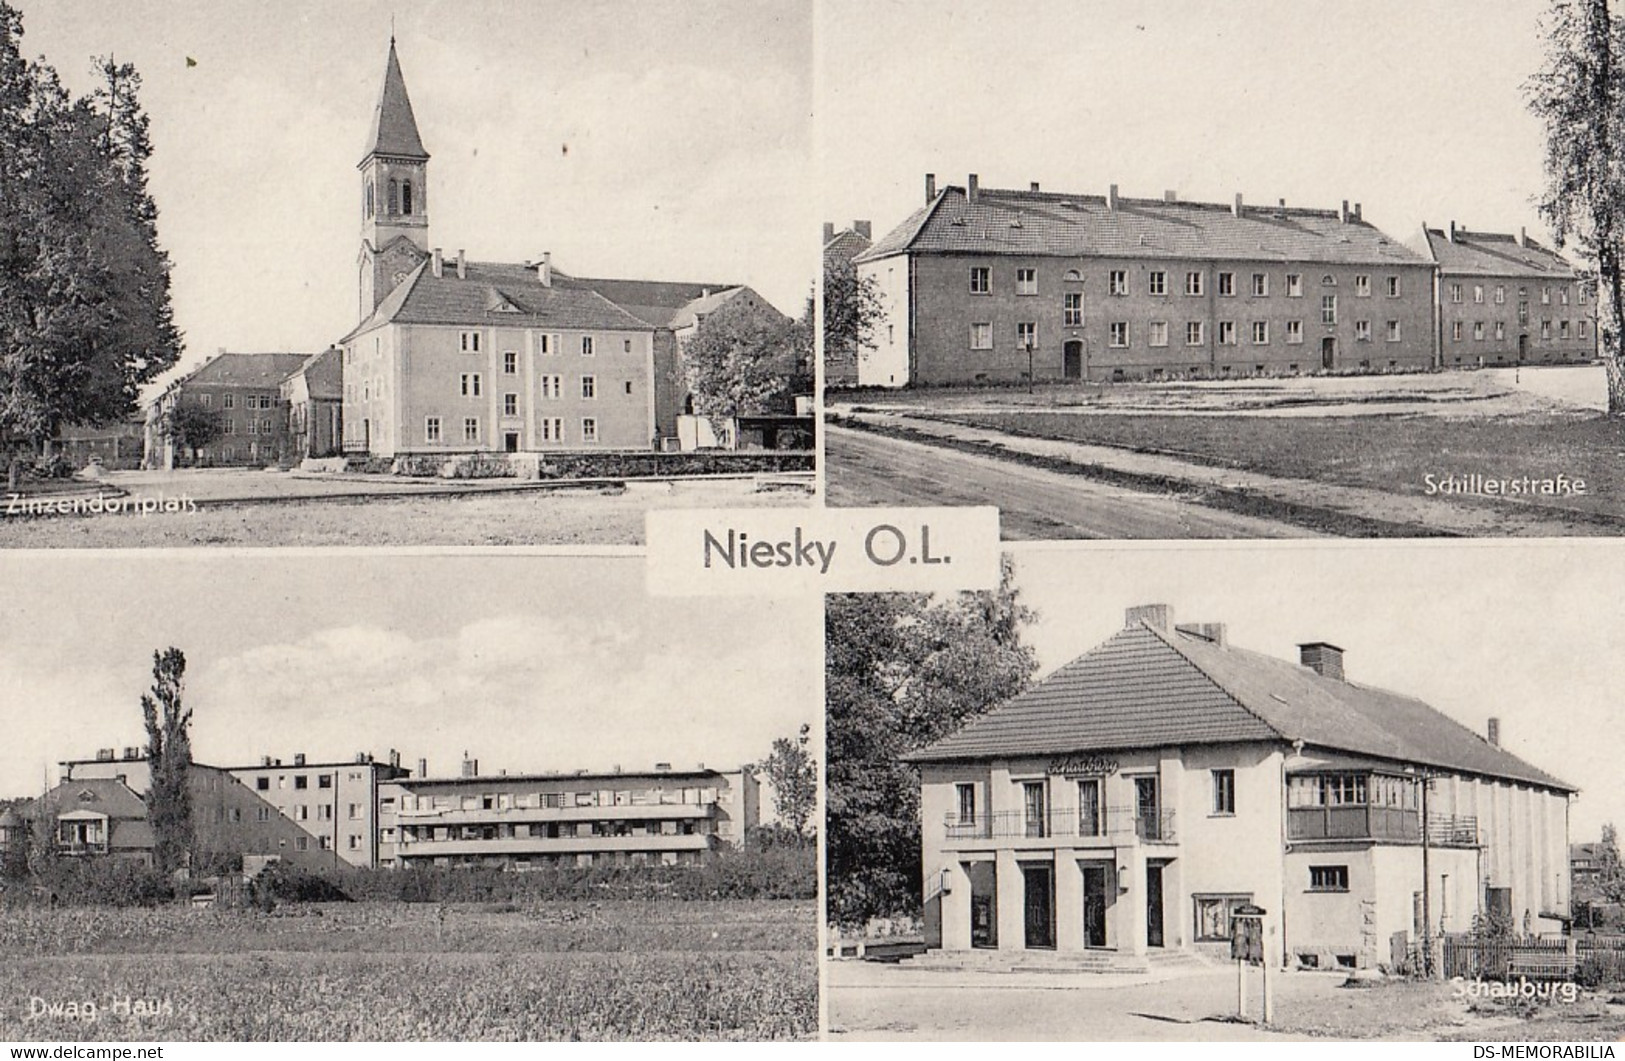 Niesky - Zinzendorfplatz - Schillerstrasse - Dwag Haus - Schauburg - Niesky